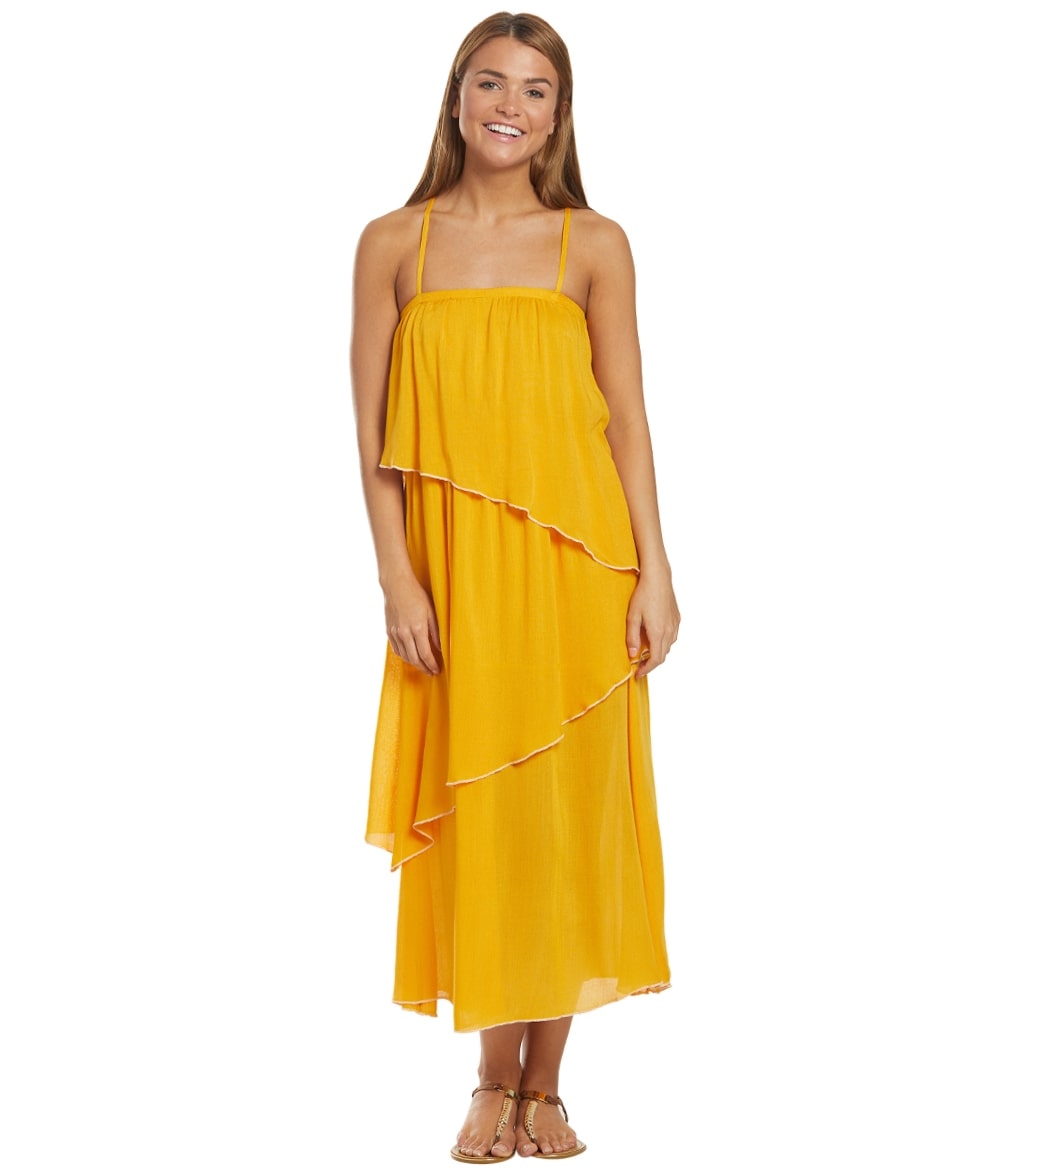 O'neill Lena Tank Dress - Sunflower Medium - Swimoutlet.com